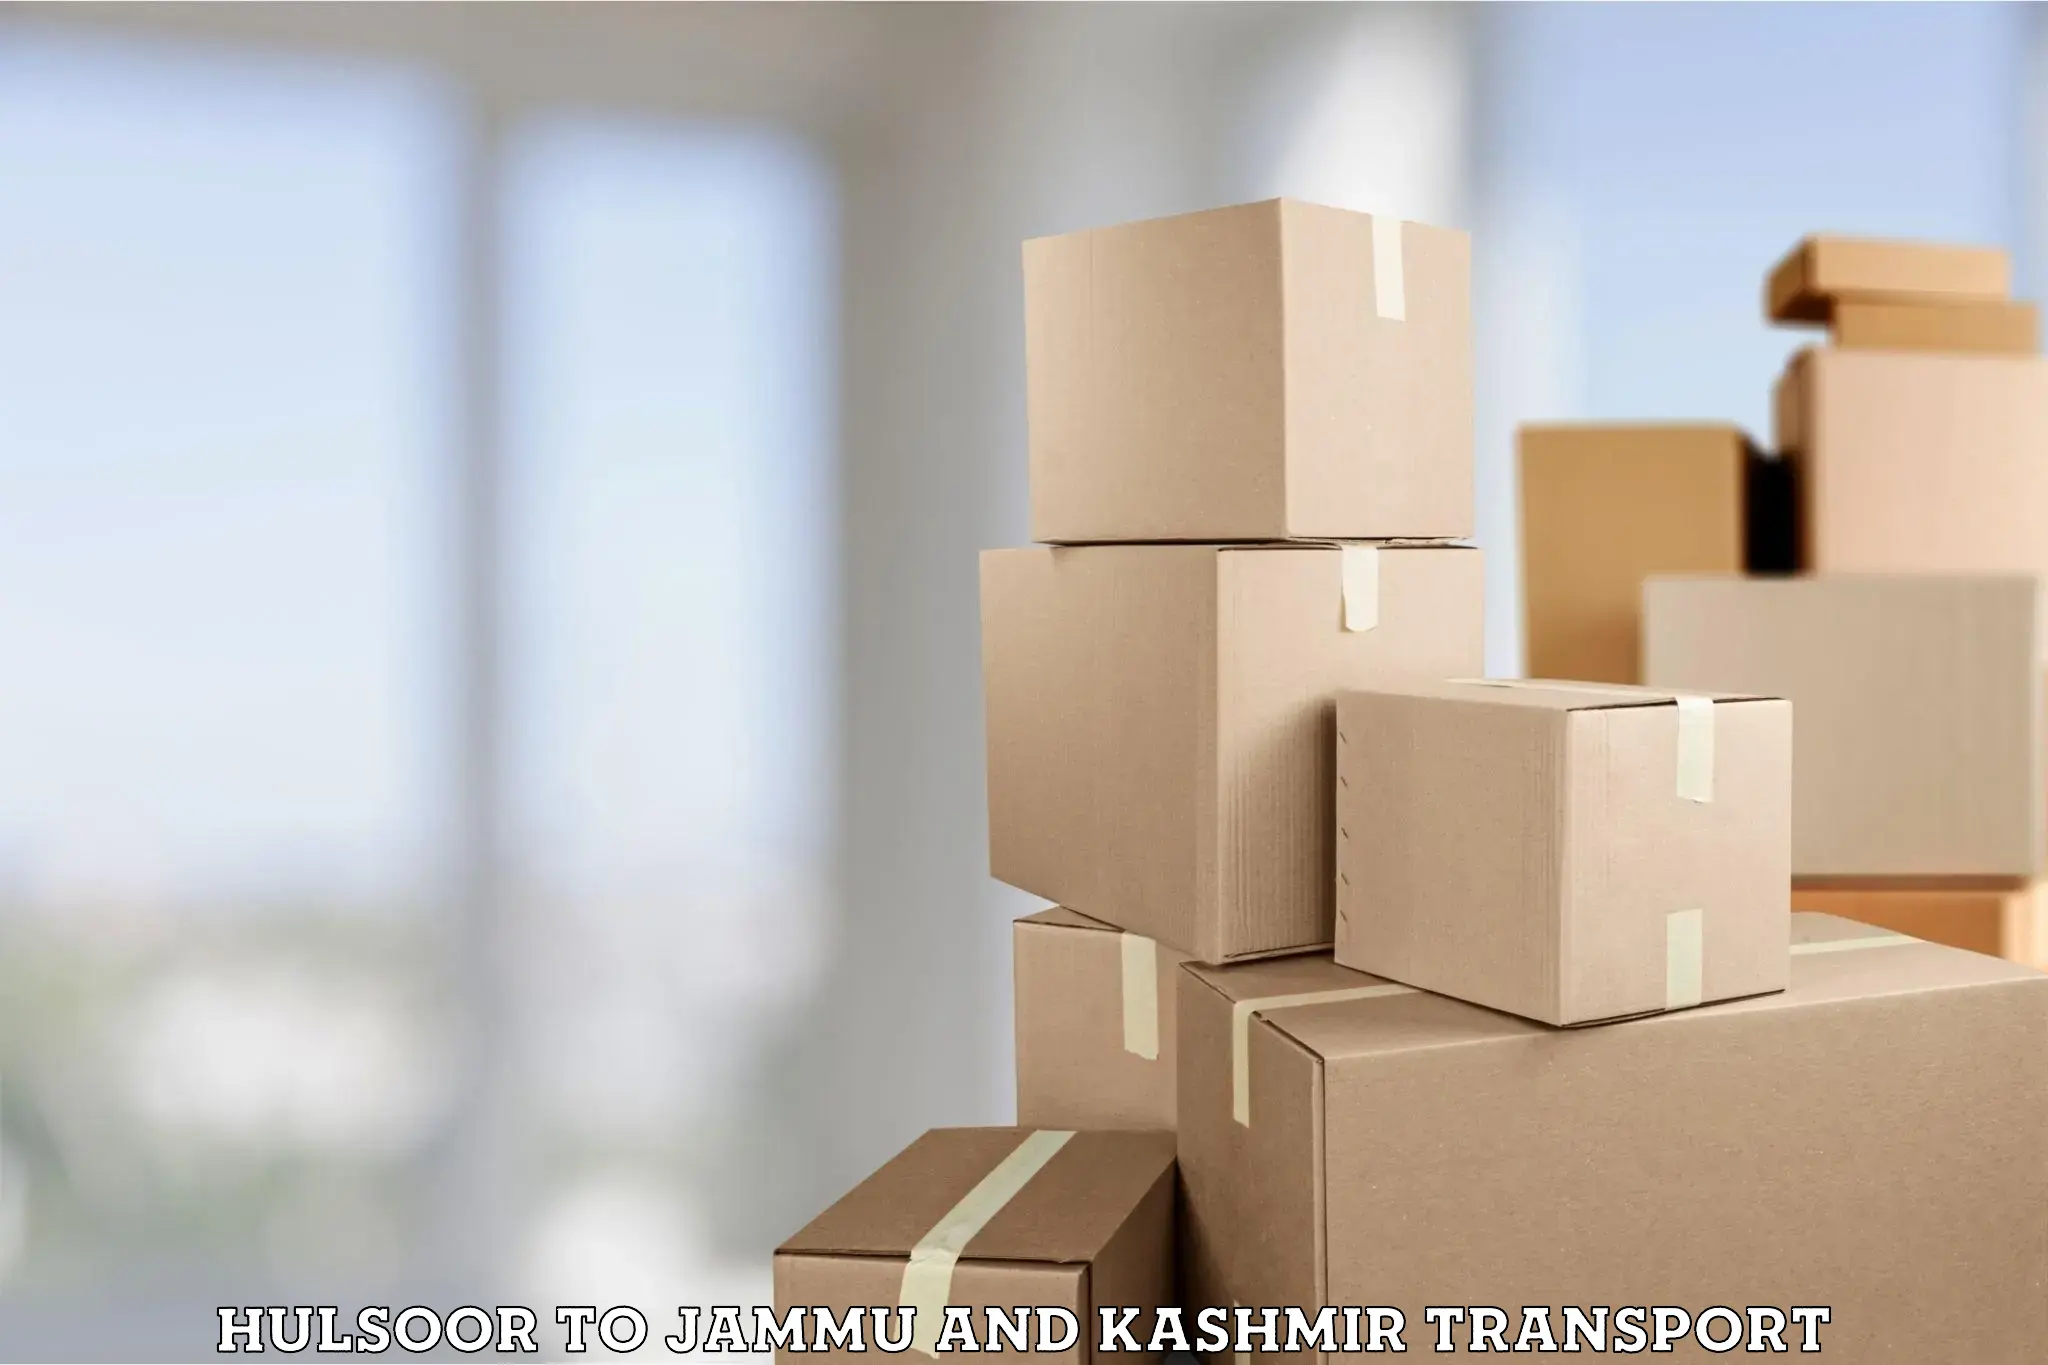 Shipping services Hulsoor to Srinagar Kashmir